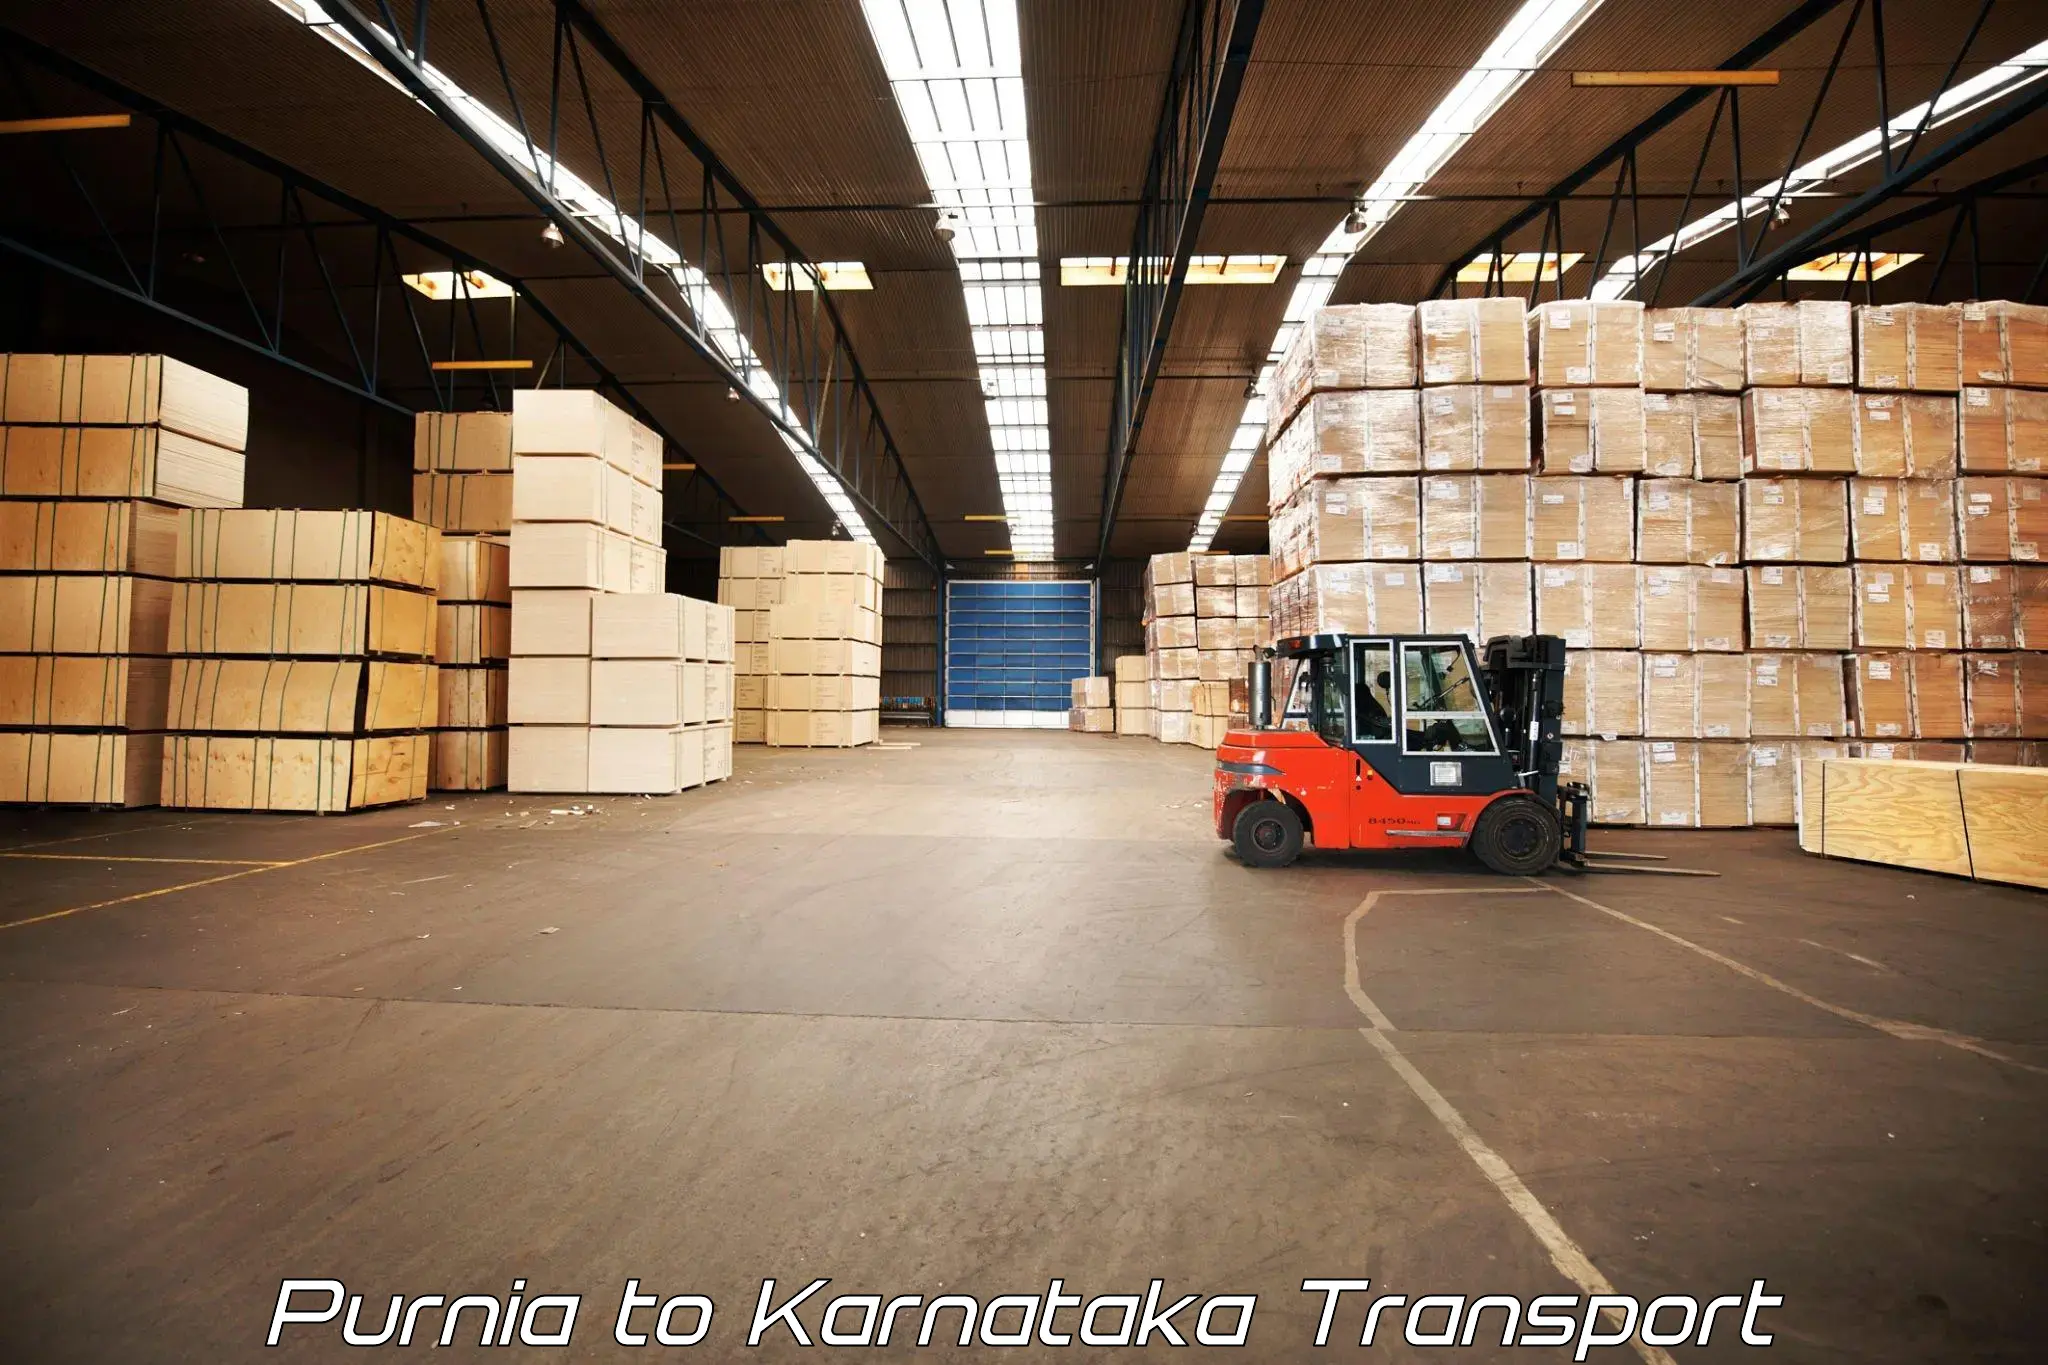 Commercial transport service Purnia to Kanakapura